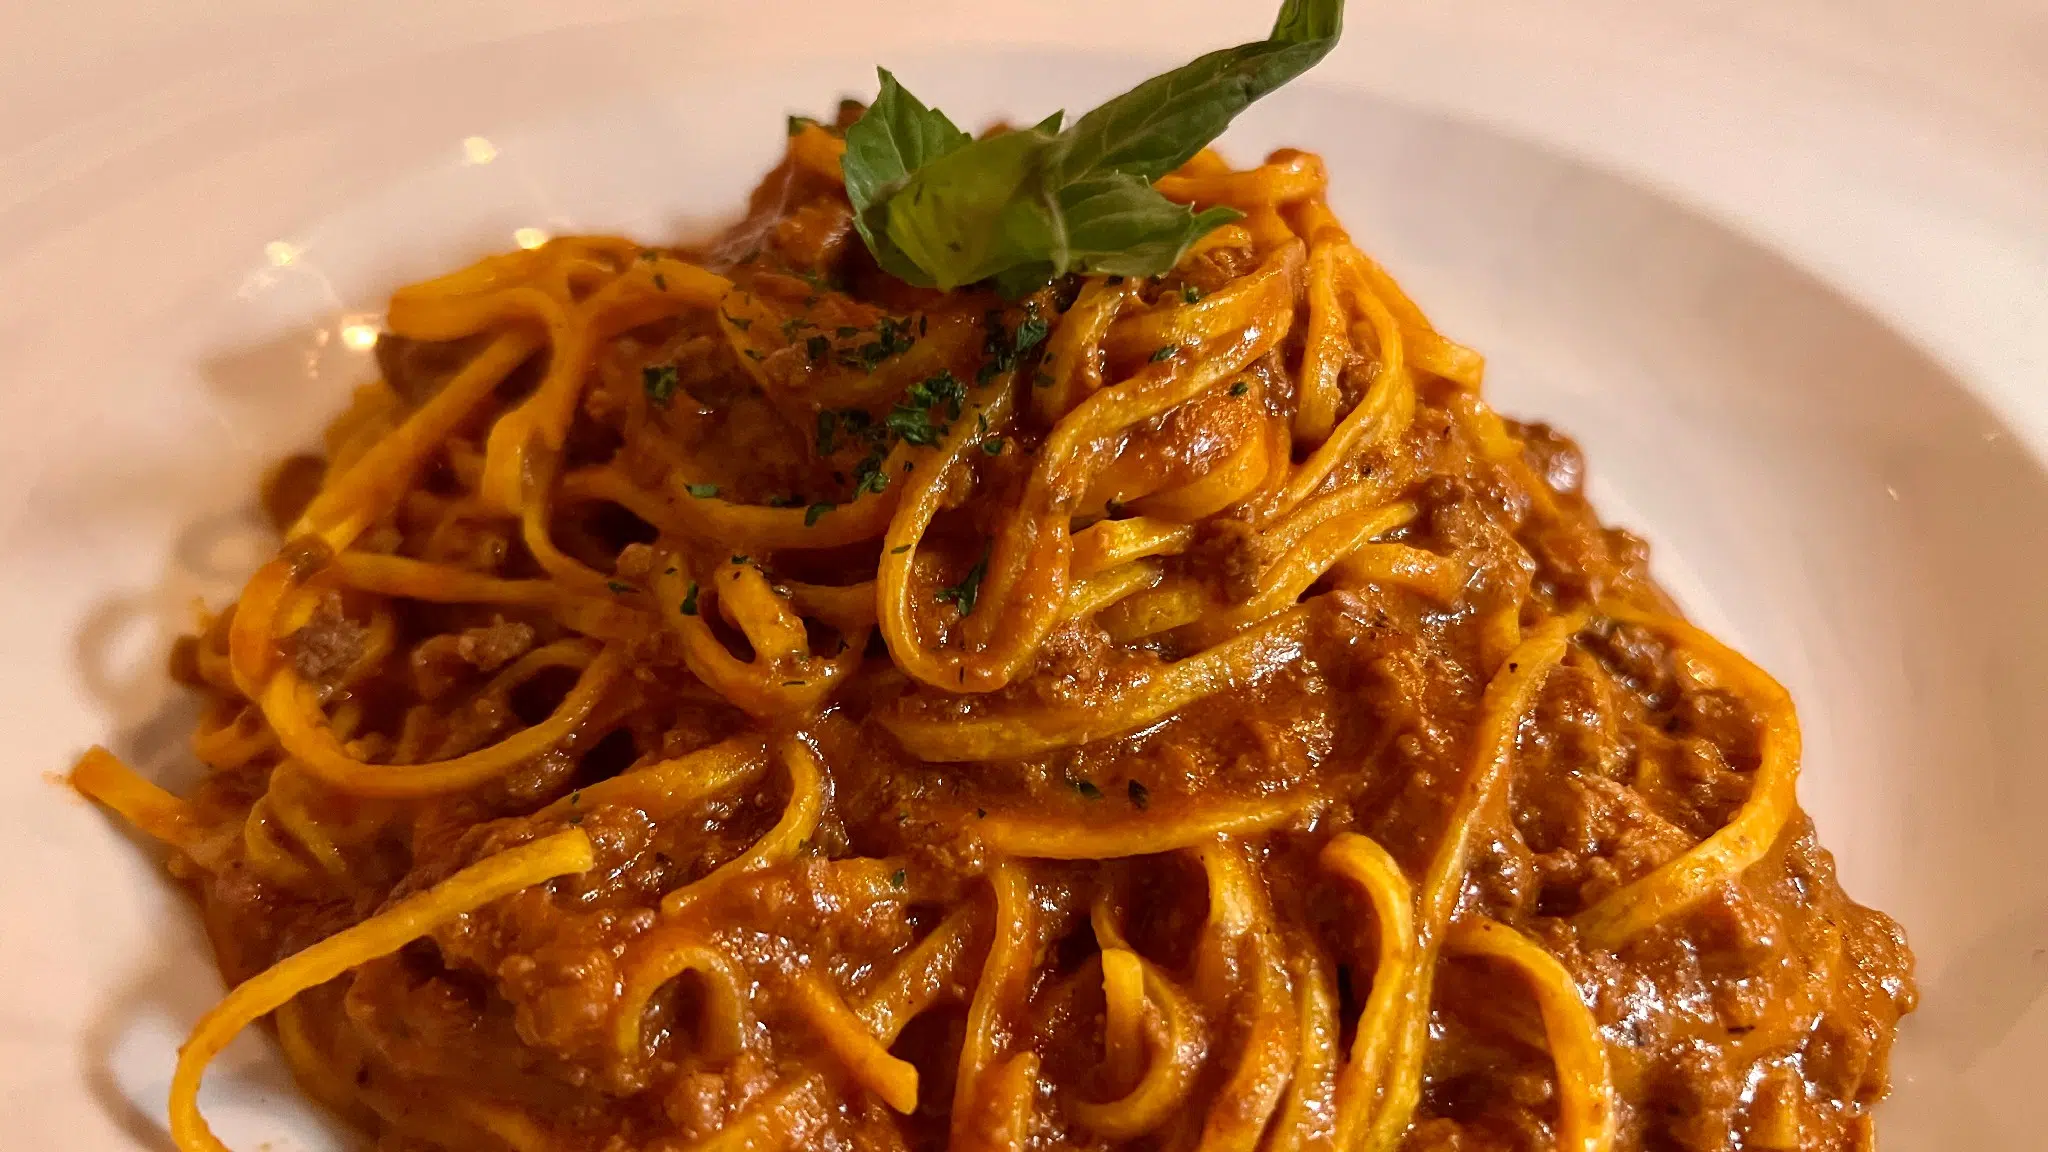 Spaghetti Bolognese at Sapore di Mare in Coconut Grove Miami Florida